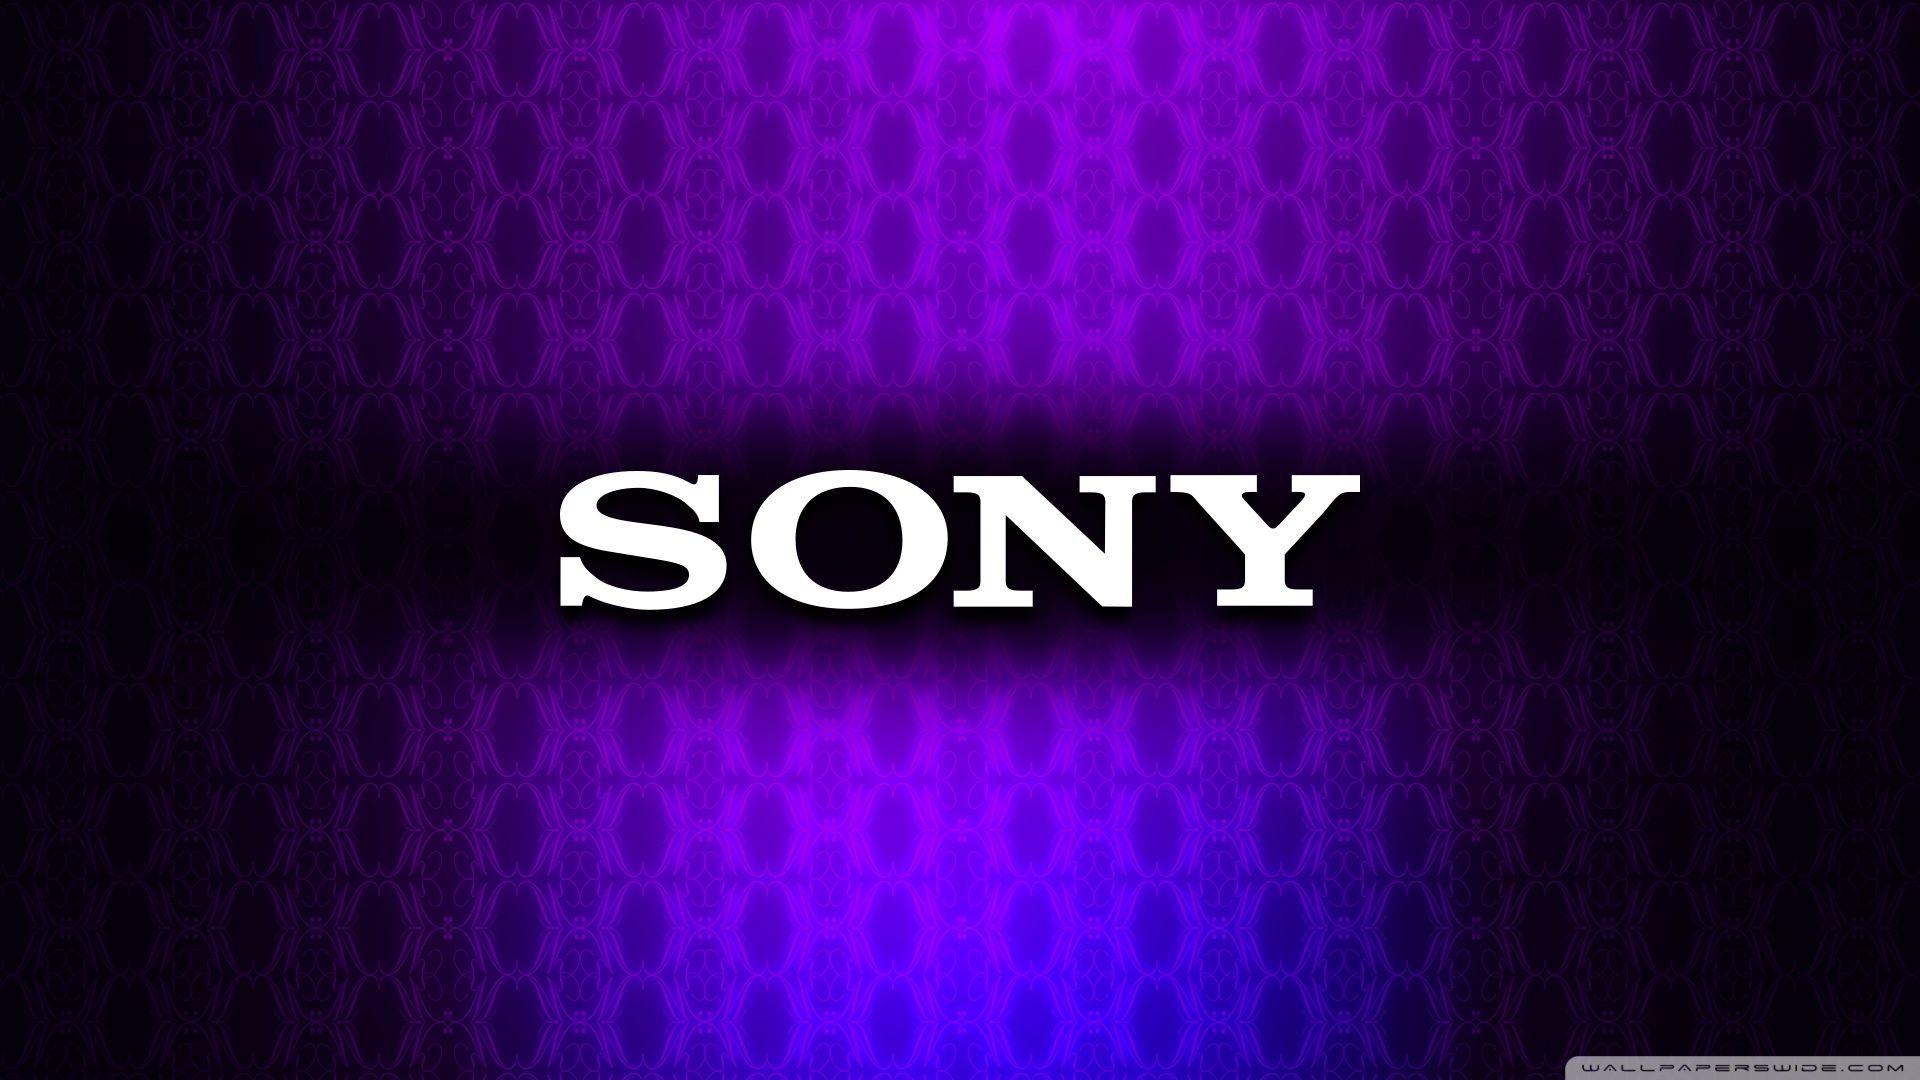 Sony ❤ 4K HD Desktop Wallpaper for 4K Ultra HD TV • Wide & Ultra